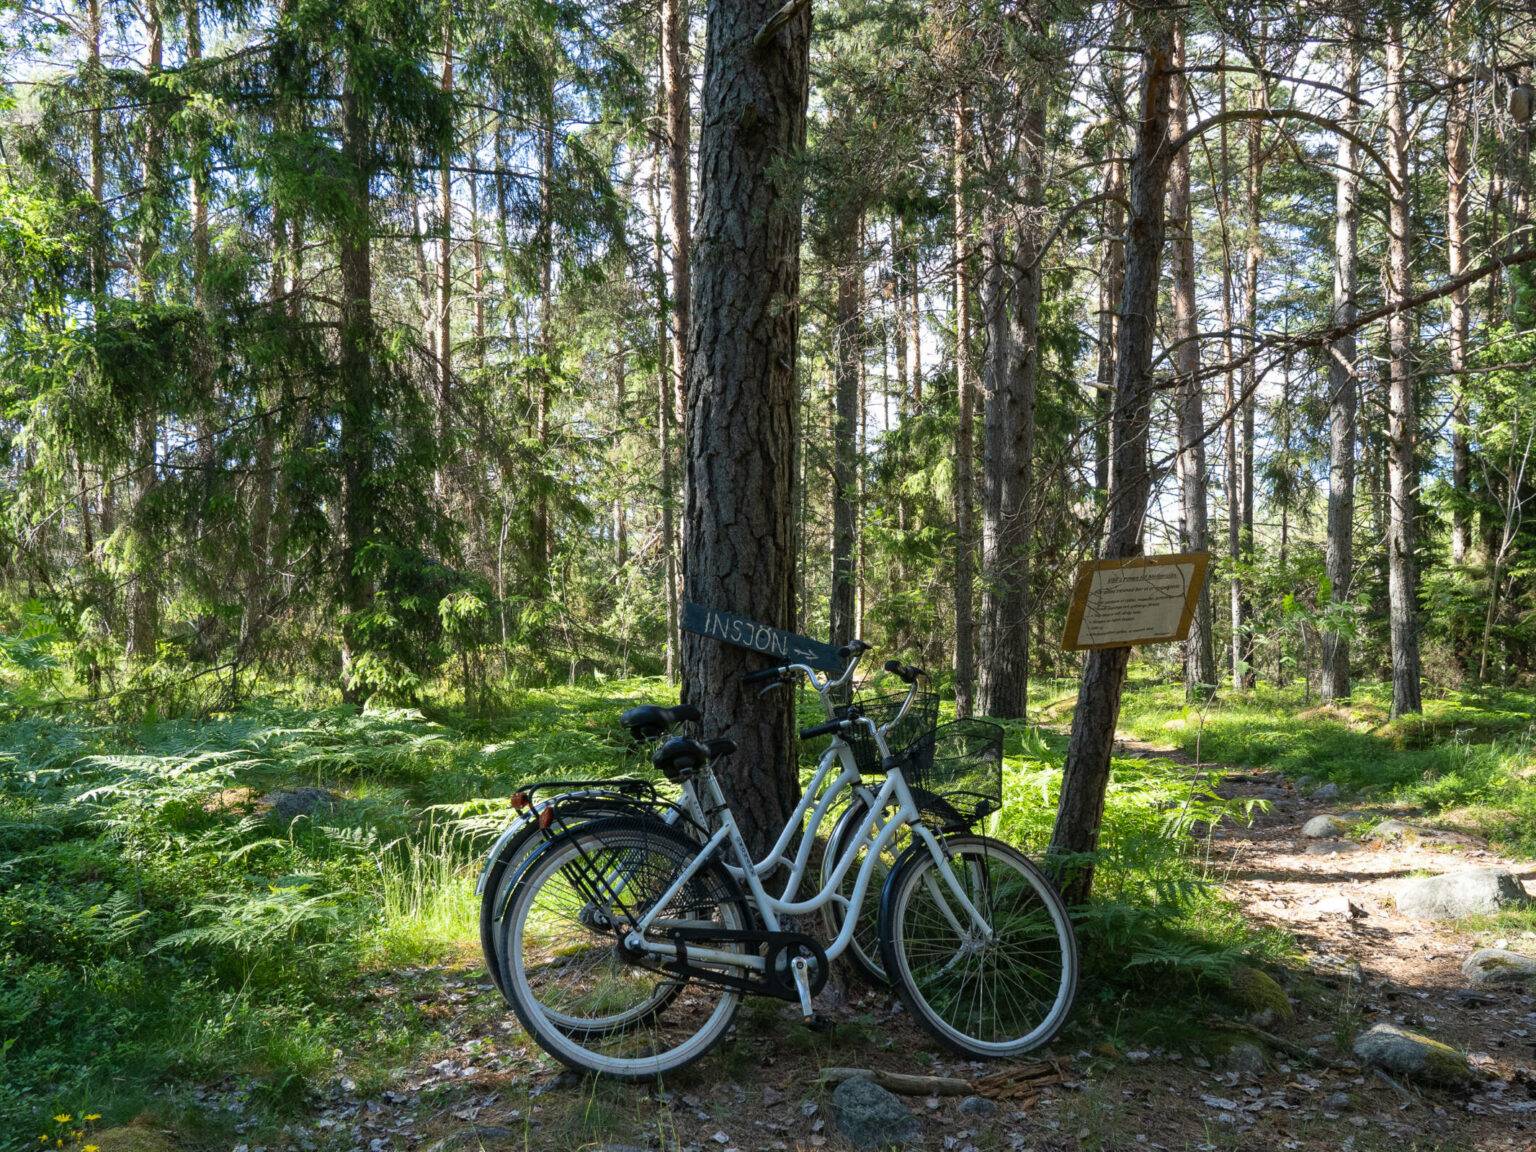 Zwei Fahrräder lehnen am Baum während einer Pause von der Fahrradtour auf der schönen Schäreninsel Möja.